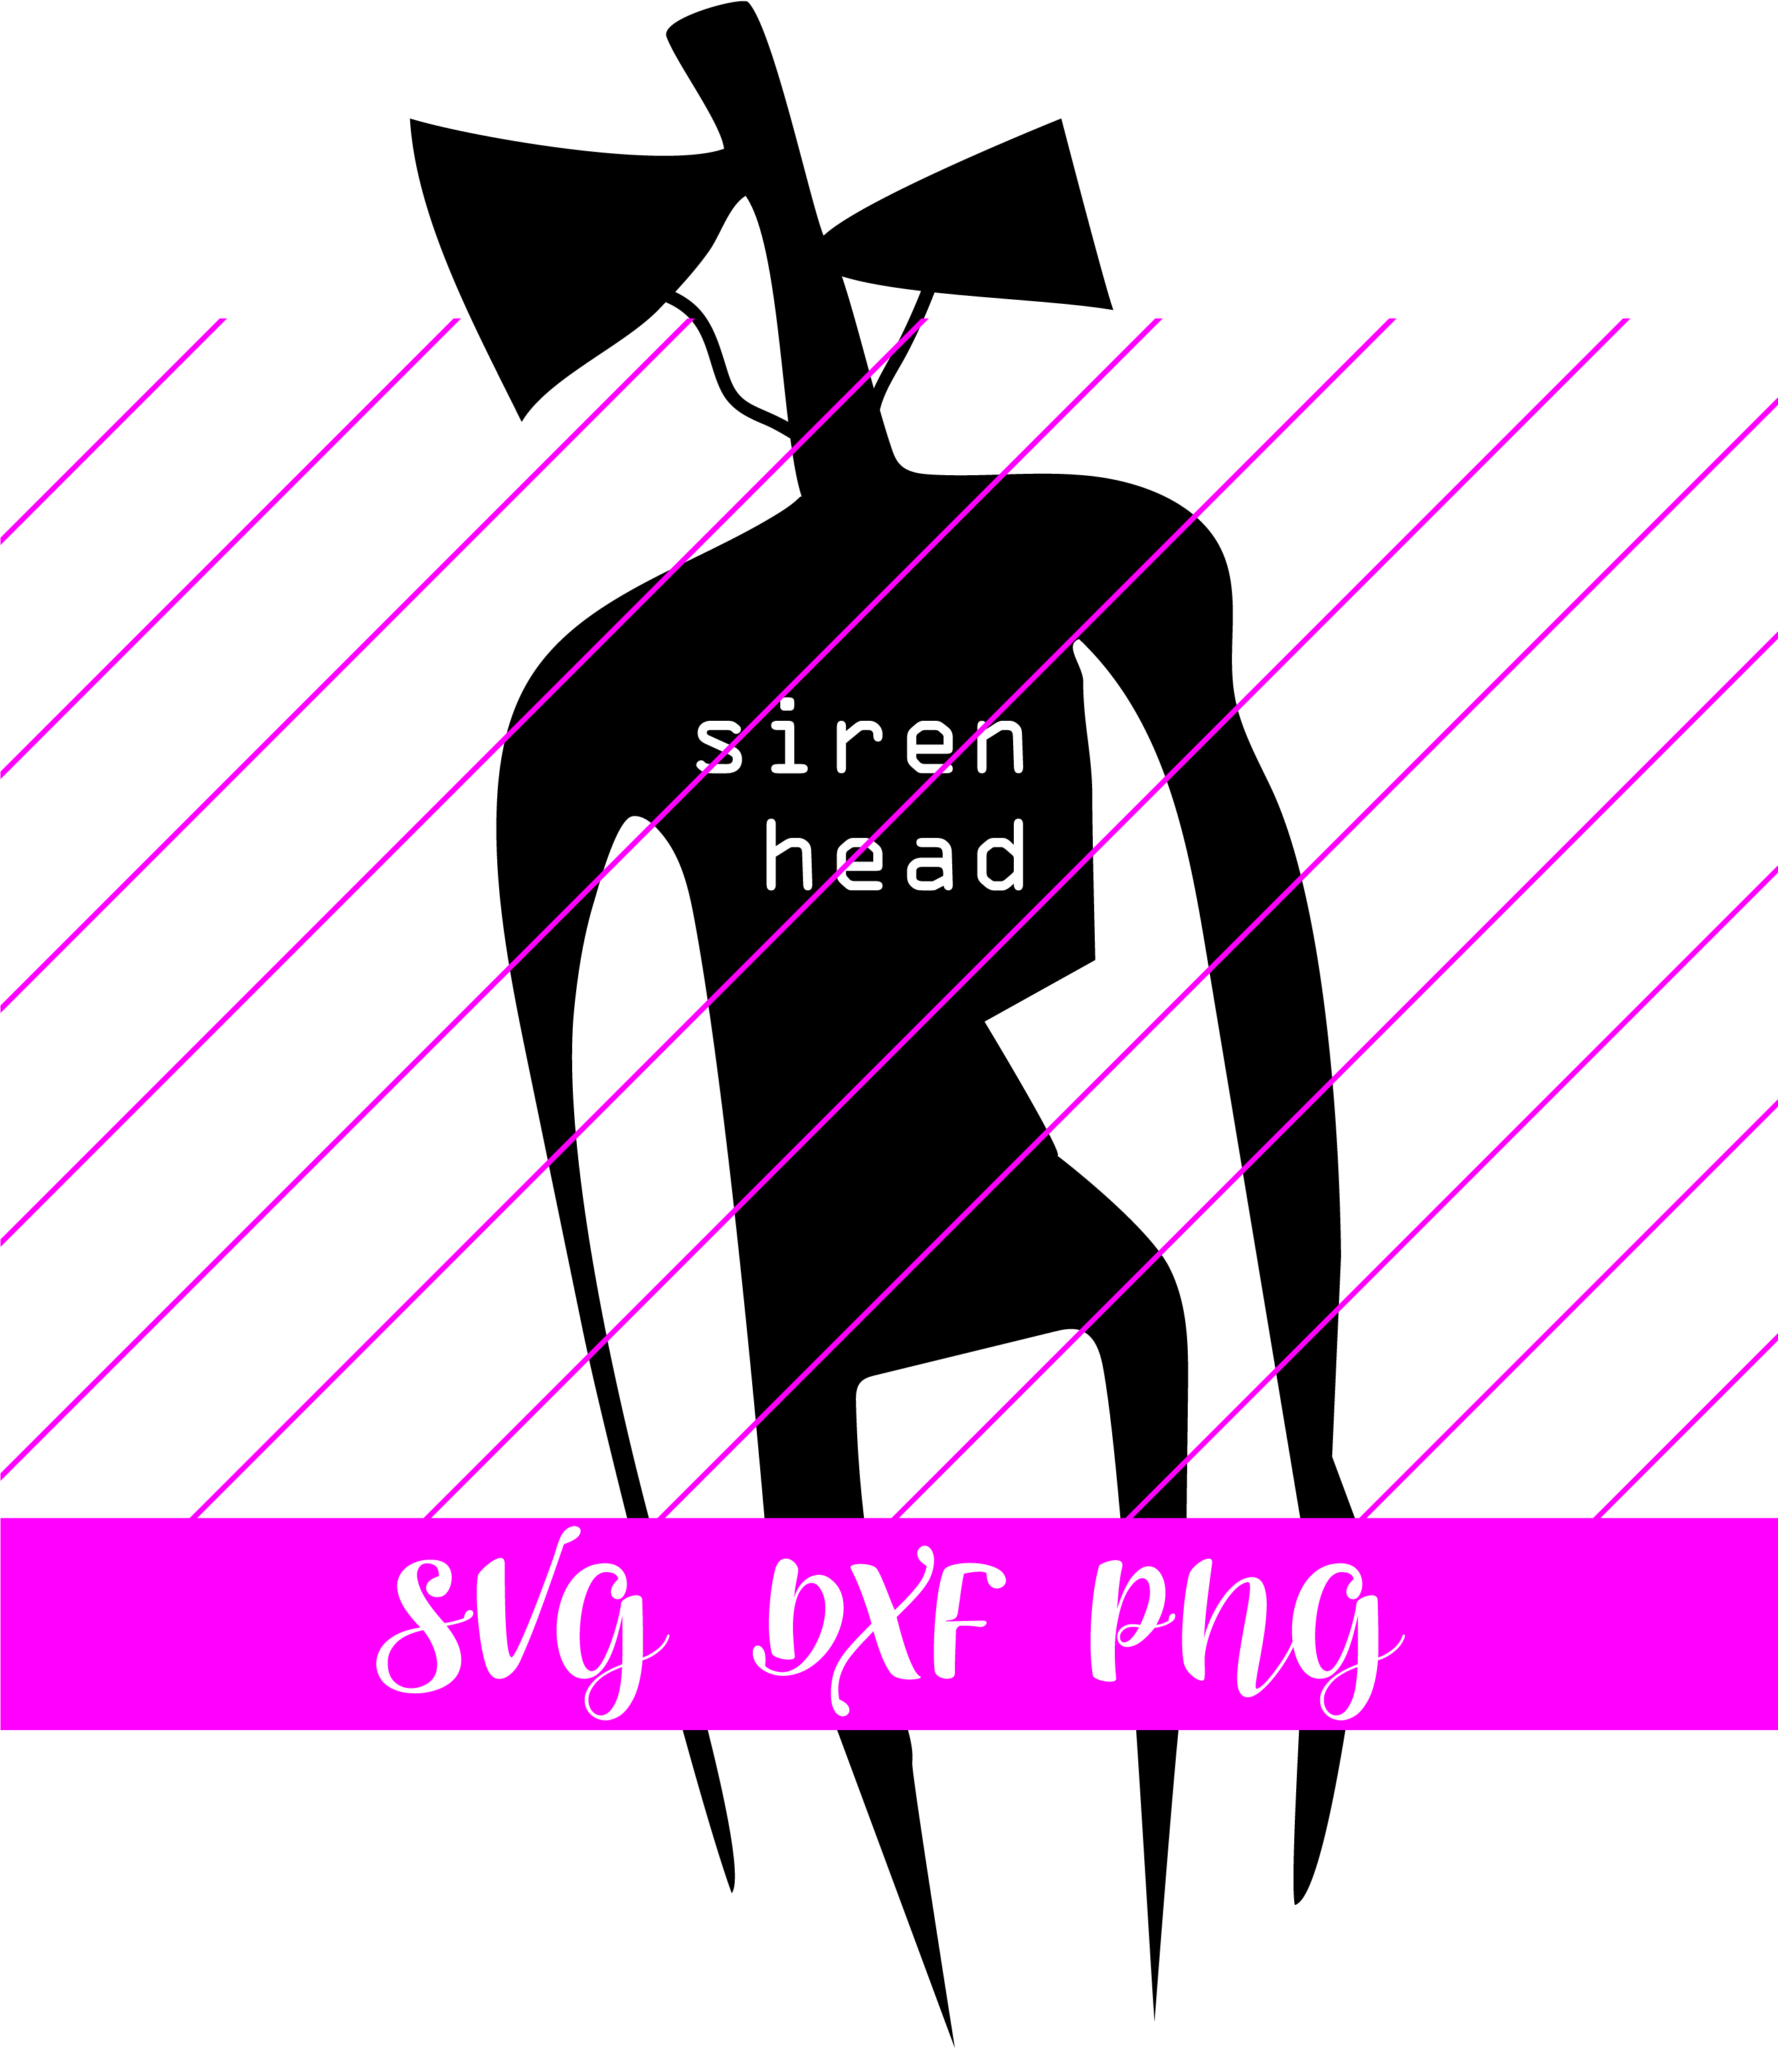 Siren head SVG - Free siren head SVG Download - svg art.